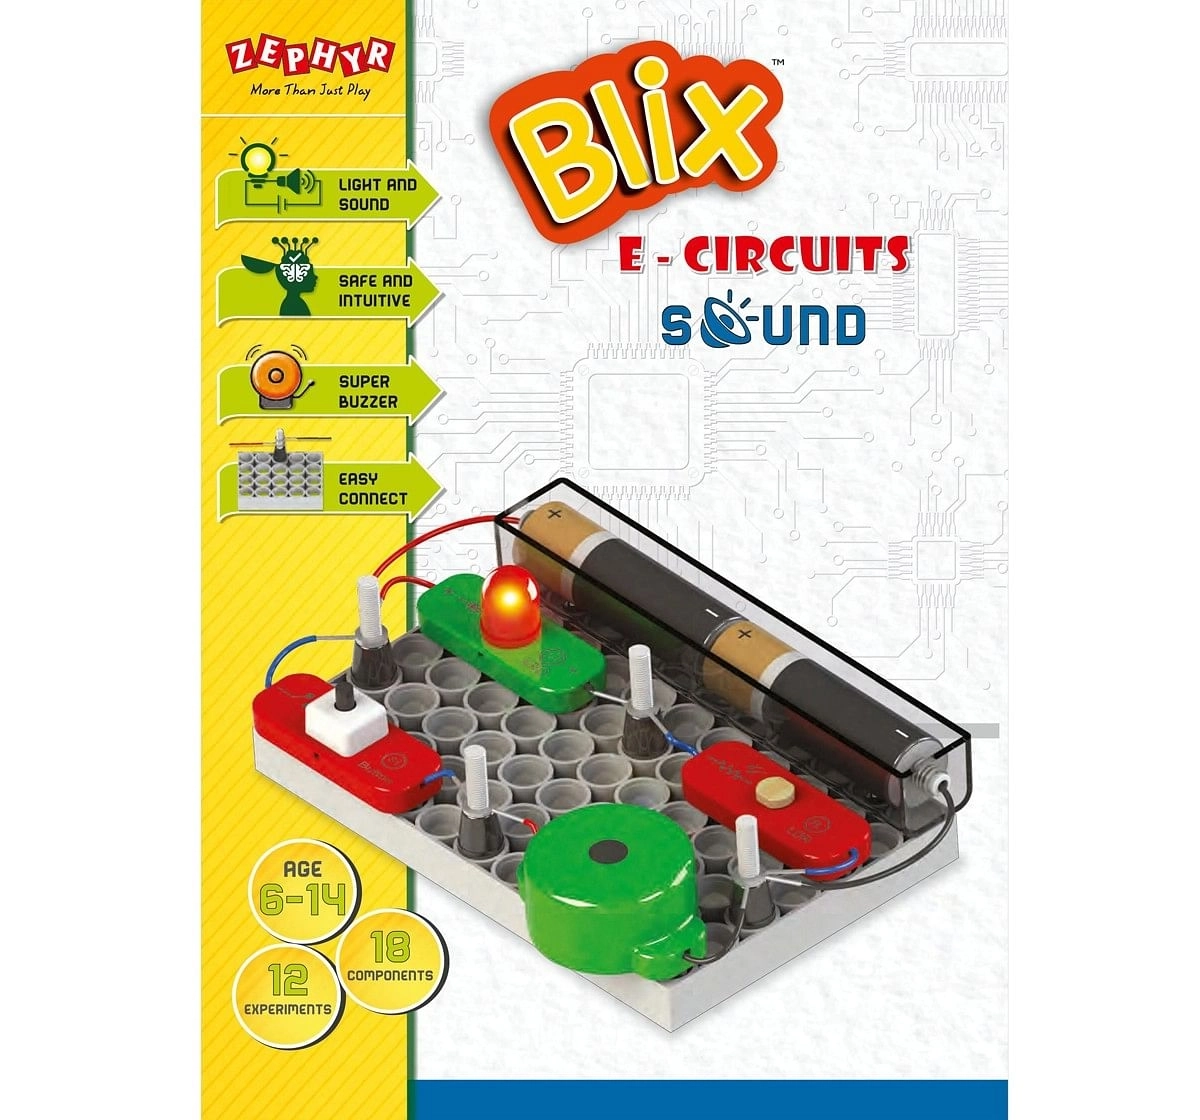 Blix ECircuit Sound Plastic Construction set Multicolor 7Y+